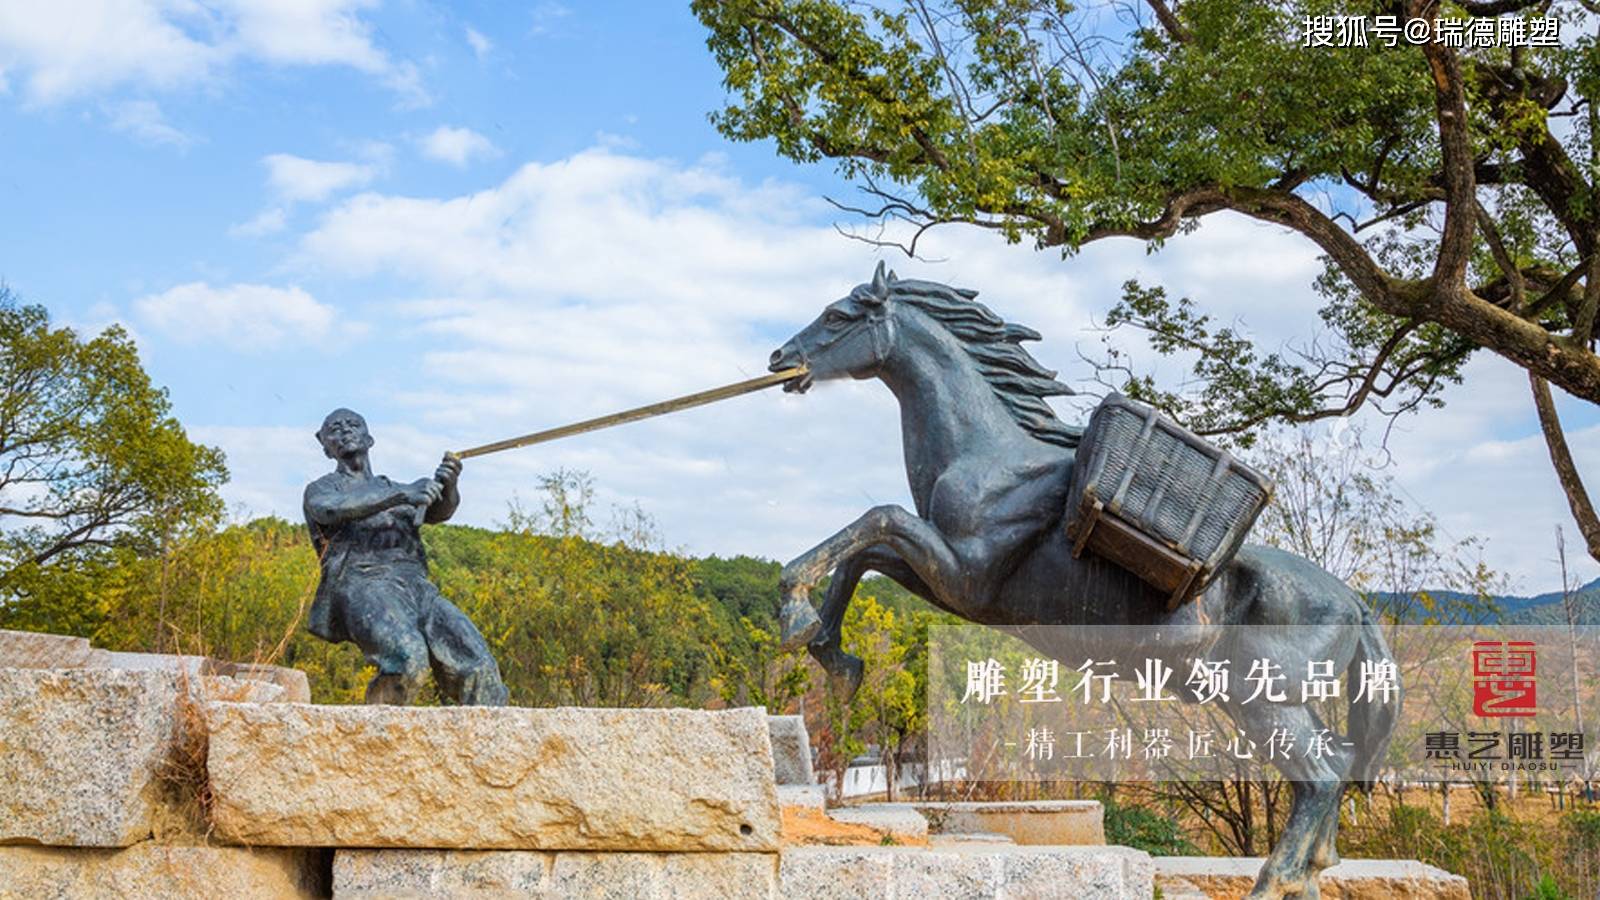 茶马古道雕塑——丝绸之路里的茶马古道历史文化